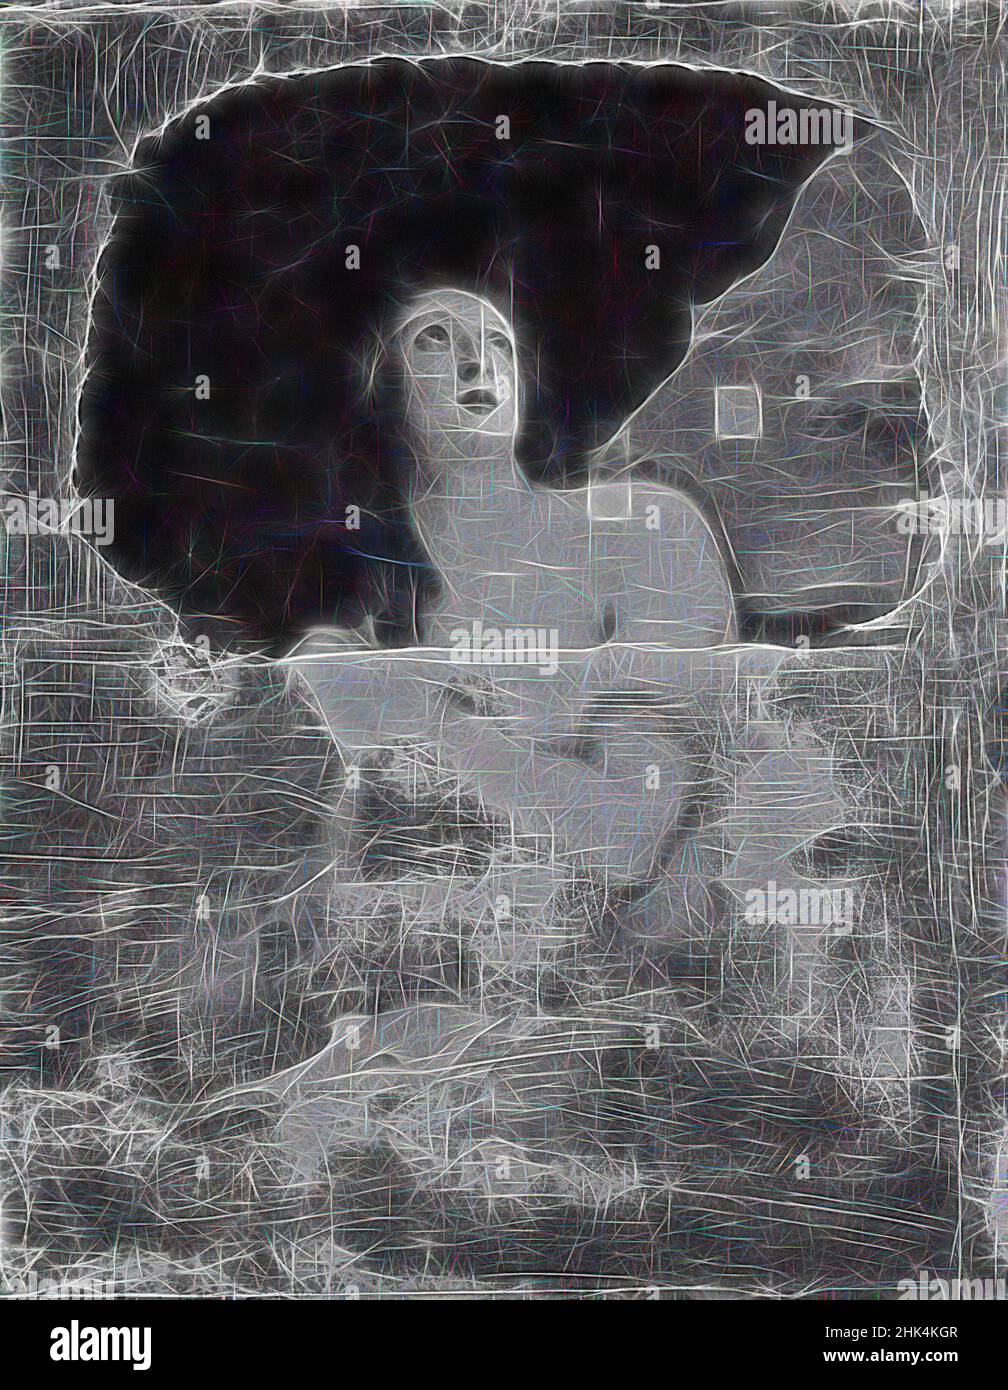 Inspiriert von Magdalene Reue, Sir Anthony van Dyck, Flämisch, 1599-1641, Öl auf Leinwand, 49 1/8 x 39 Zoll, 124,8 x 99,1 cm, neu erfunden von Artotop. Klassische Kunst neu erfunden mit einem modernen Twist. Design von warmen fröhlichen Leuchten der Helligkeit und Lichtstrahl Strahlkraft. Fotografie inspiriert von Surrealismus und Futurismus, umarmt dynamische Energie der modernen Technologie, Bewegung, Geschwindigkeit und Kultur zu revolutionieren Stockfoto